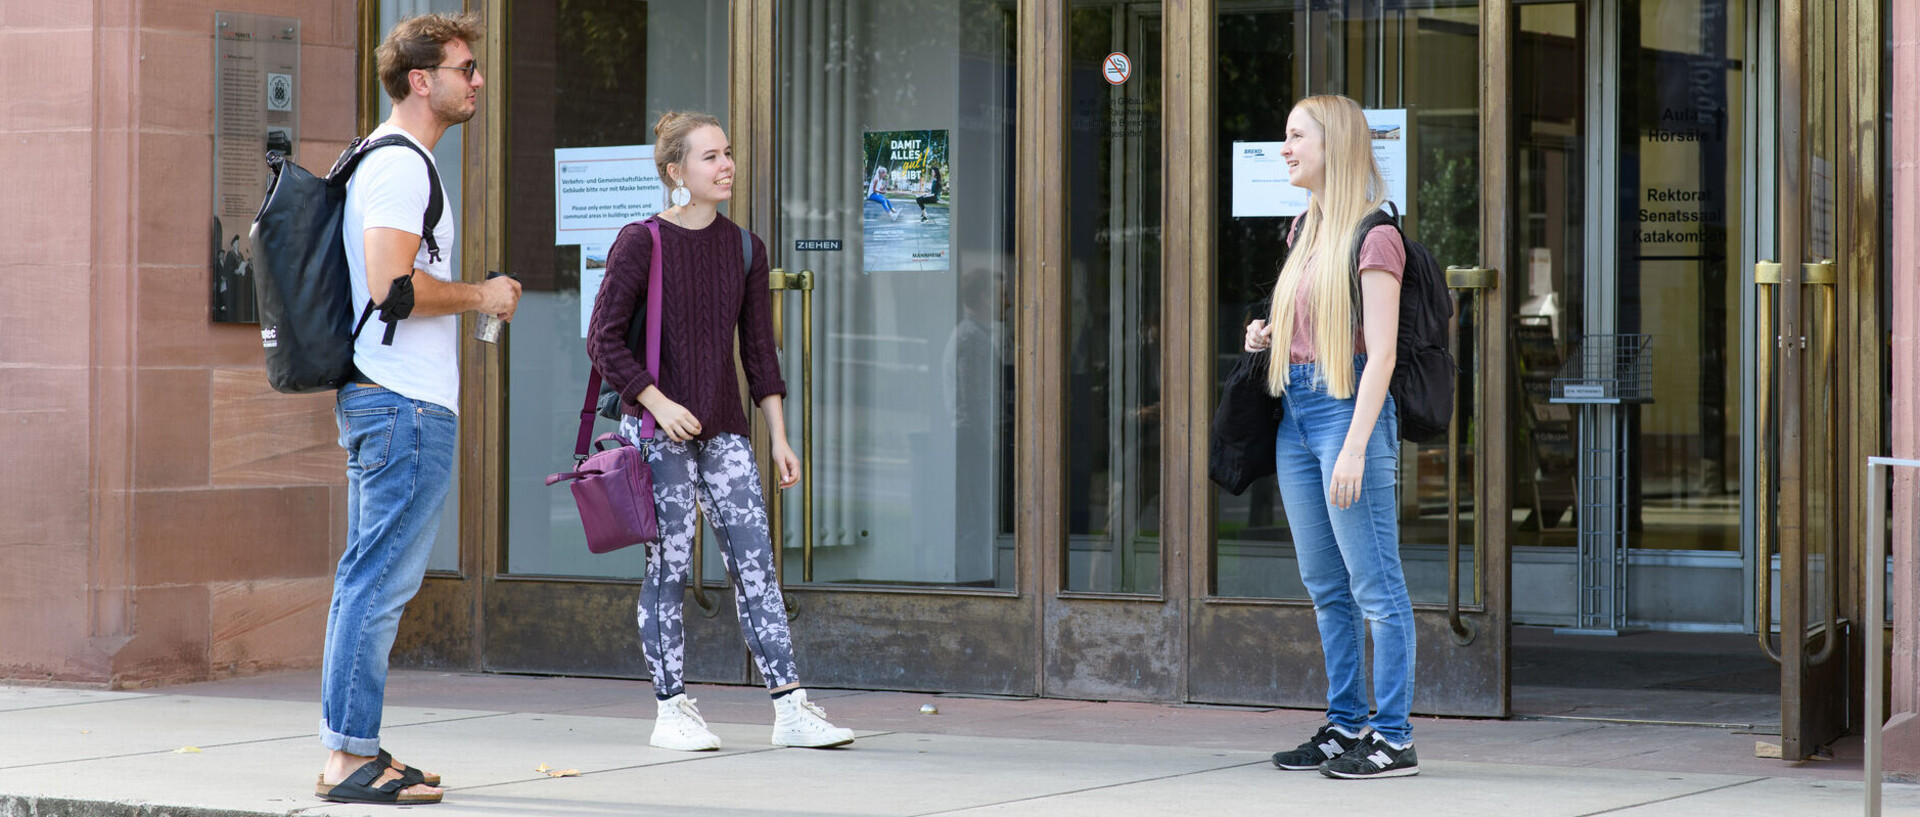 Drei Studierende stehen mit etwa 1,5 m Abstand voneinander vor dem Haupteingang der Universität Mannheim und unterhalten sich.